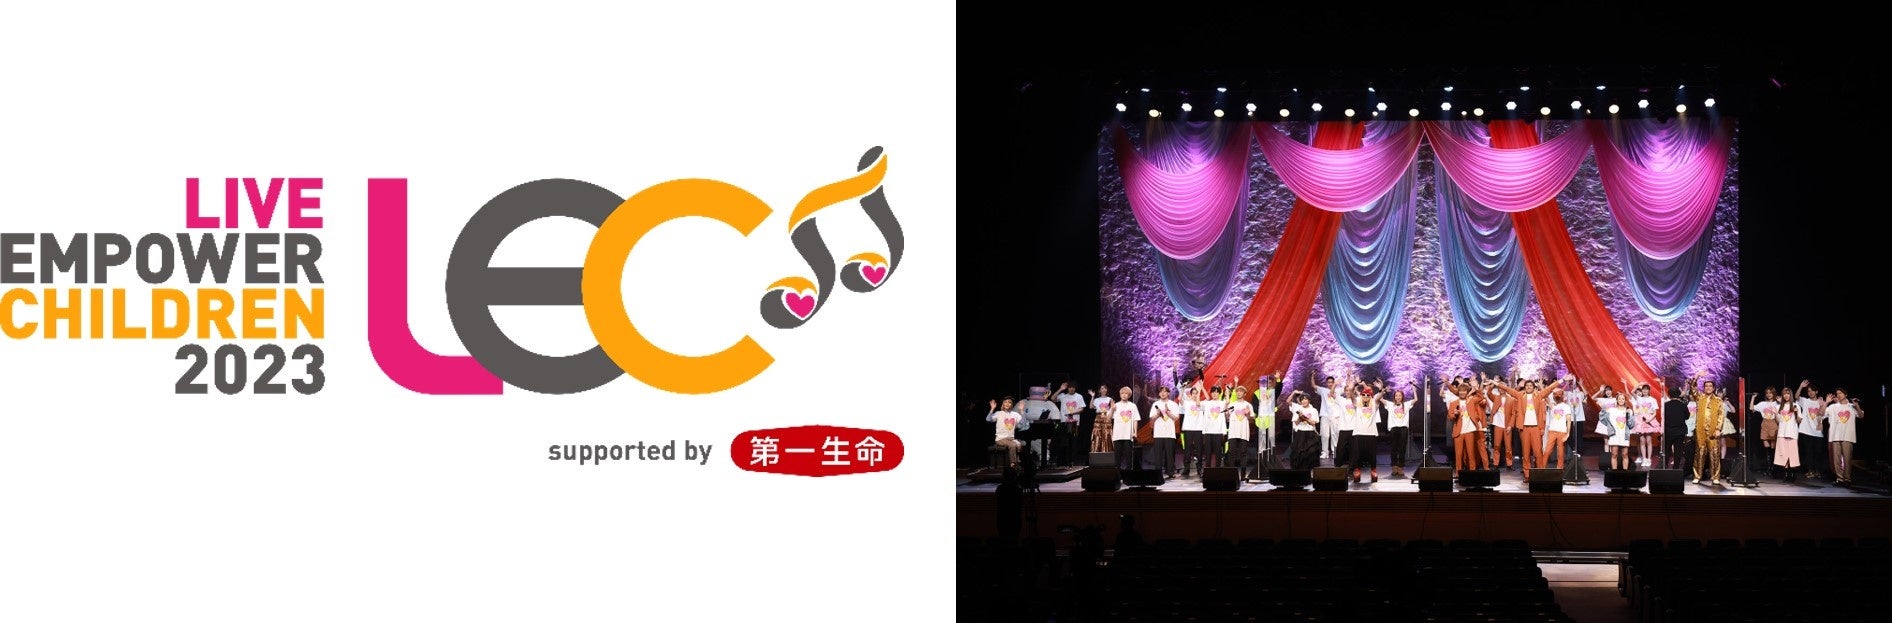 相川七瀬、ゴスペラーズ、Da-iCEなどのアーティストが出演する音楽チャリティーライヴ「LIVE EMPOWER CHILDREN 2023 supported by 第一生命保険」開催のサブ画像1